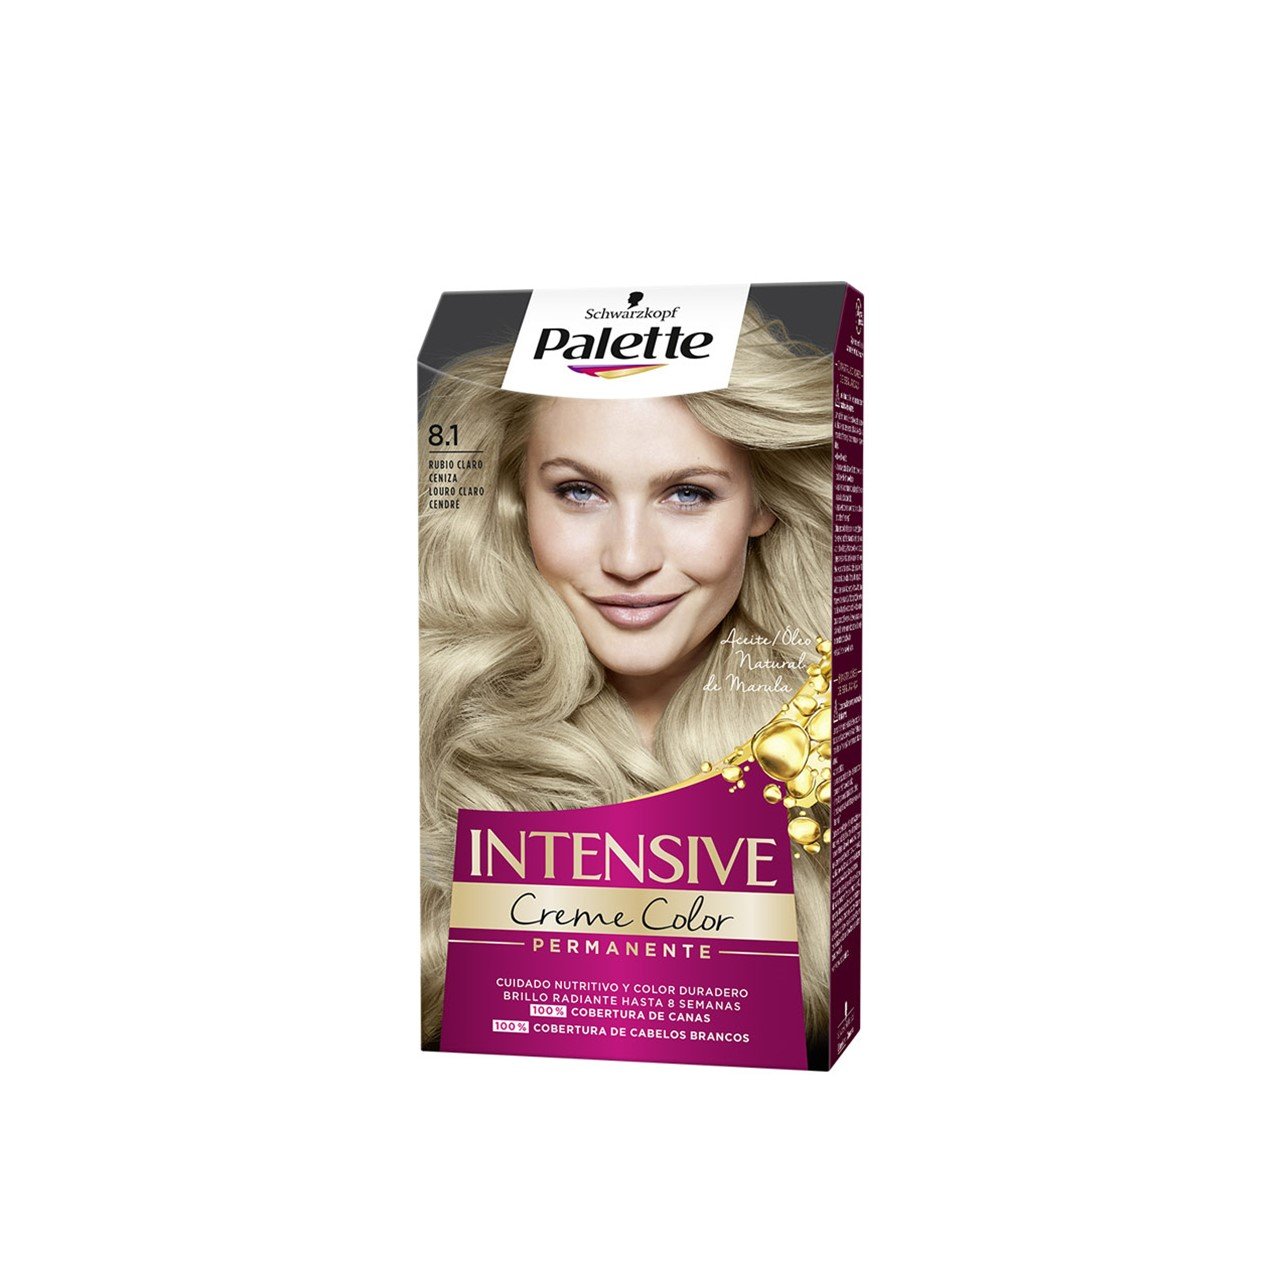 Schwarzkopf Palette Intensive Creme Color Permanent Hair Dye 8.1 Ashy Light Blonde